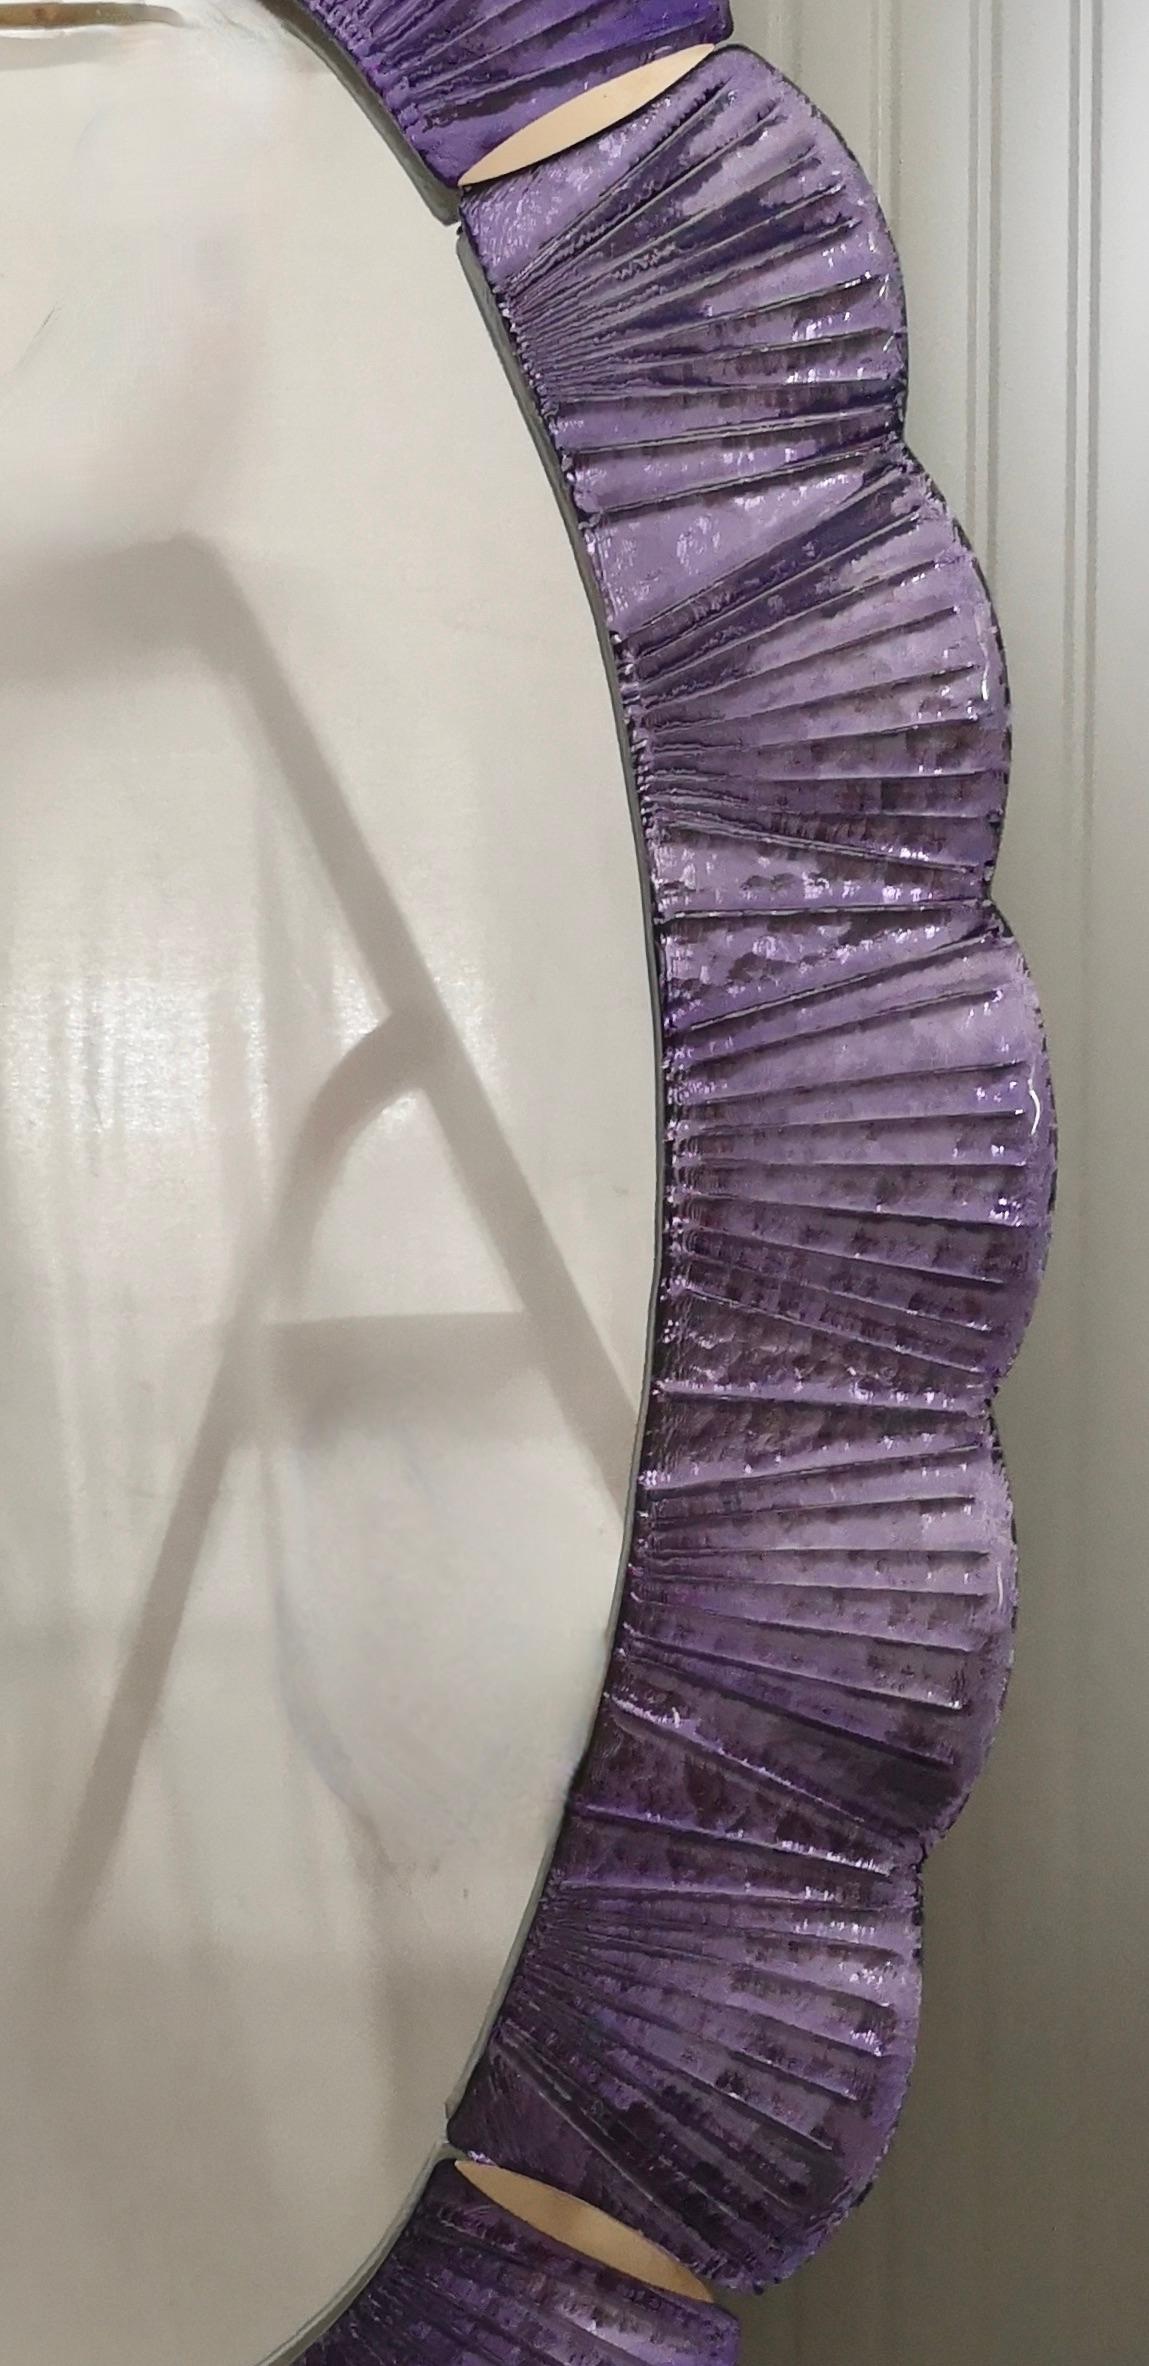 Atemberaubende Spiegel in lodernden violetten Farbe Murano-Glas, Venedig. Ein Spiegel, der allein Ihr Zuhause einrichtet.

Der Spiegel hat eine Rückwand aus Holz, auf der vier Muranoglasscheiben montiert sind, die wie auf dem Foto ein Oval bilden.